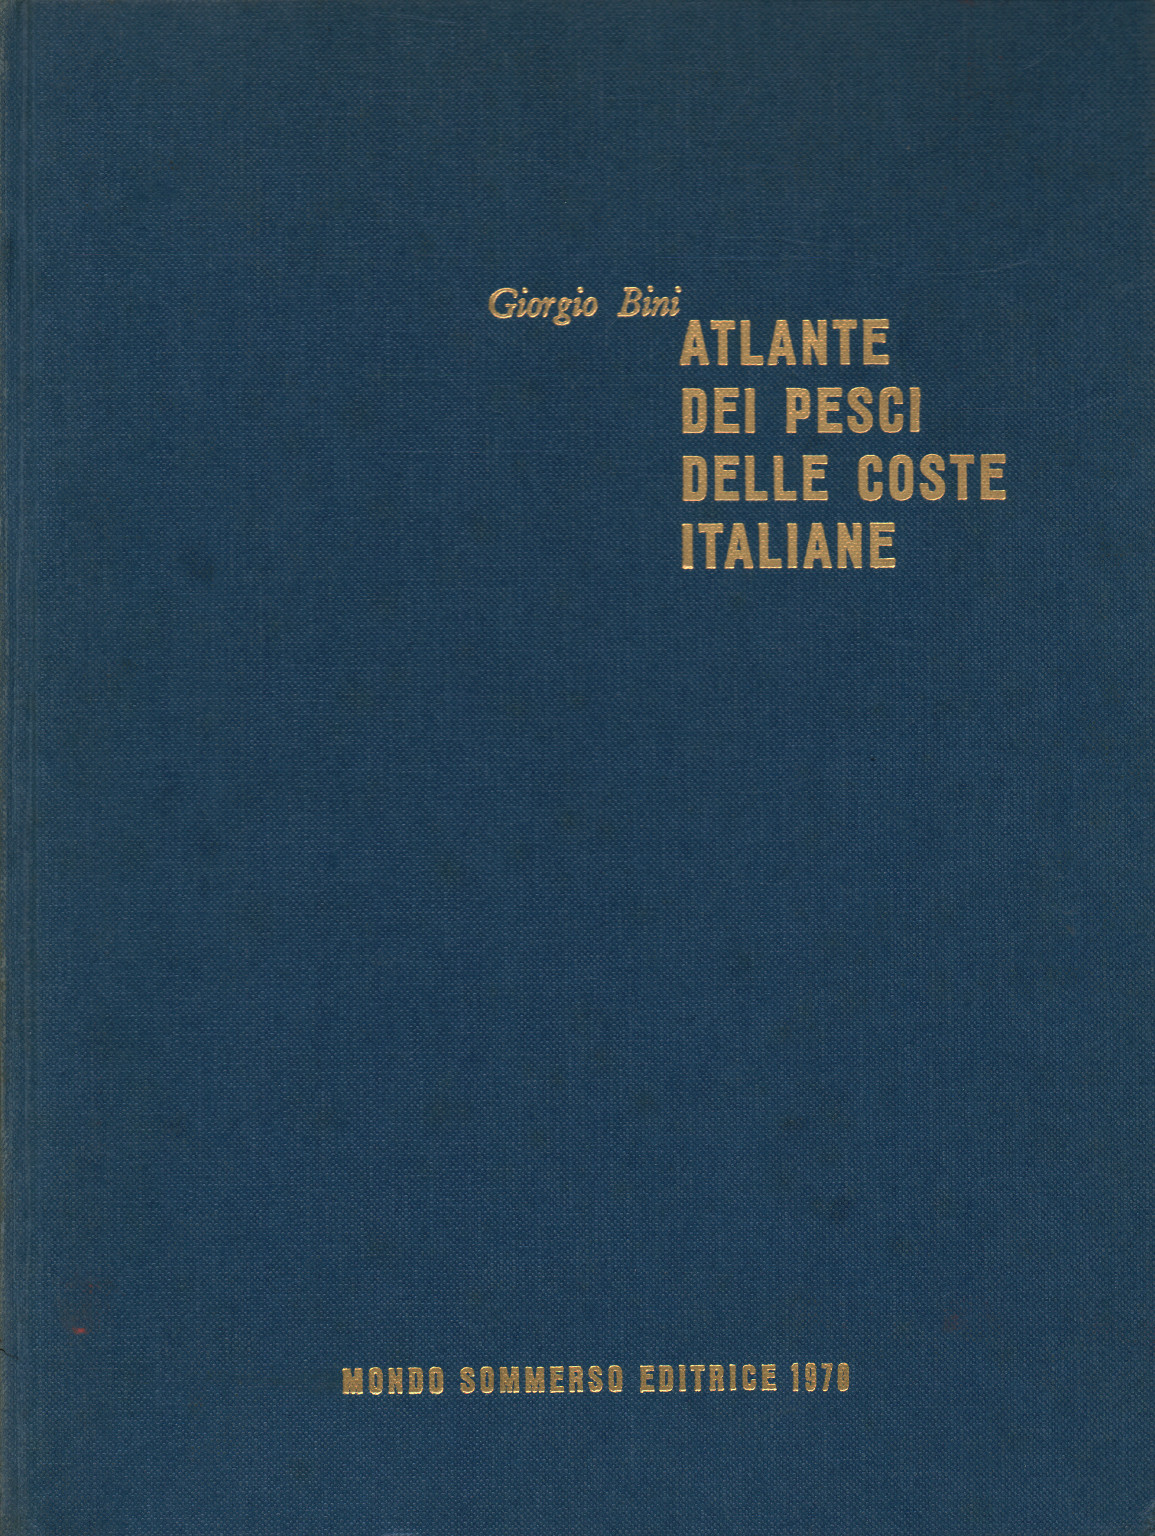 Atlante dei pesci delle coste italiane Volume III, Giorgio Bini